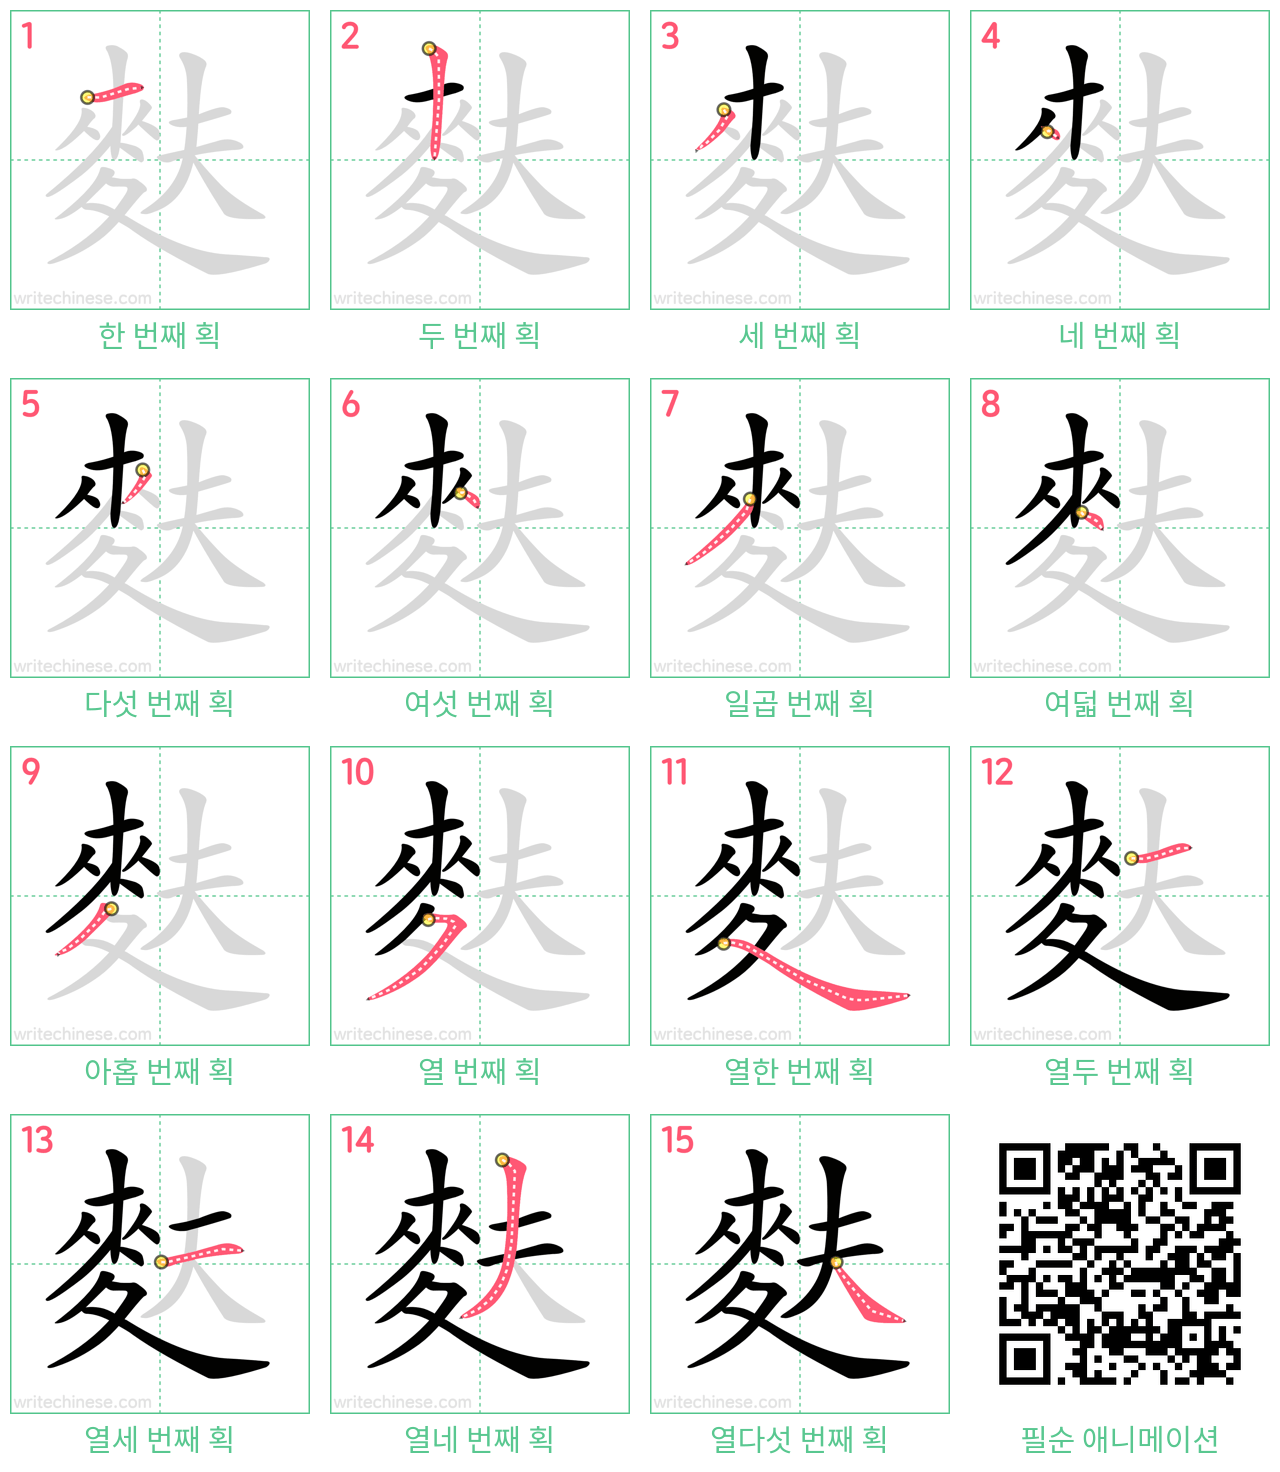 麩 step-by-step stroke order diagrams